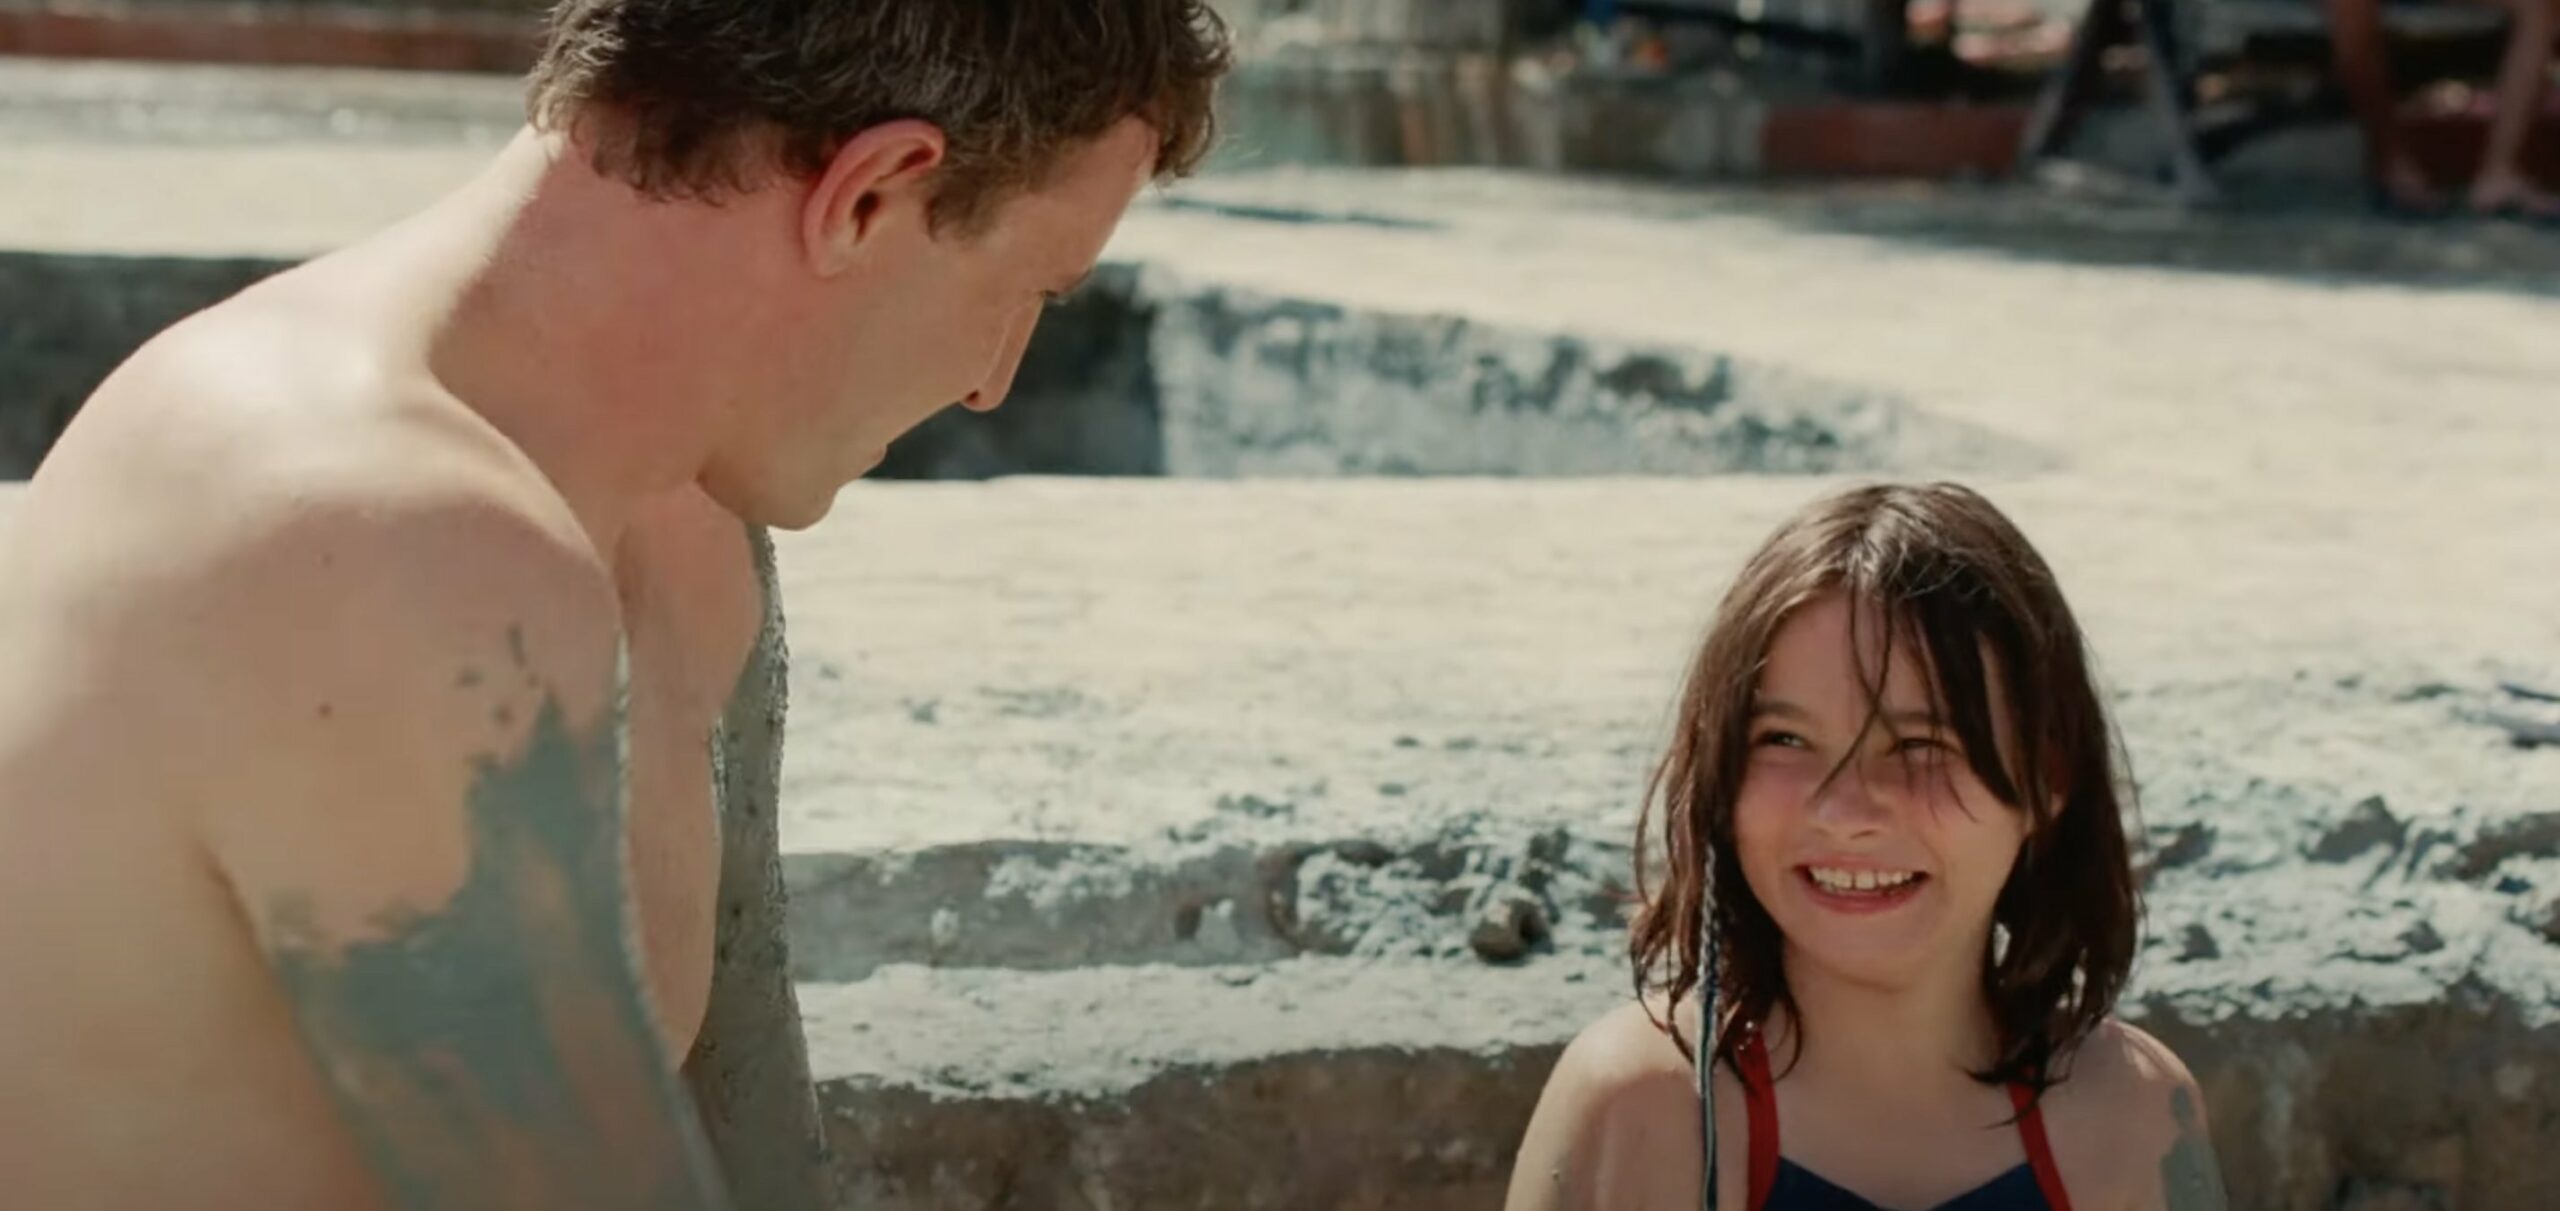 Cena do filme Aftersun, mostra pai e filha numa piscina de lama, se sujando. Eles sorriem um para o outro e está de dia e ensolarado. 